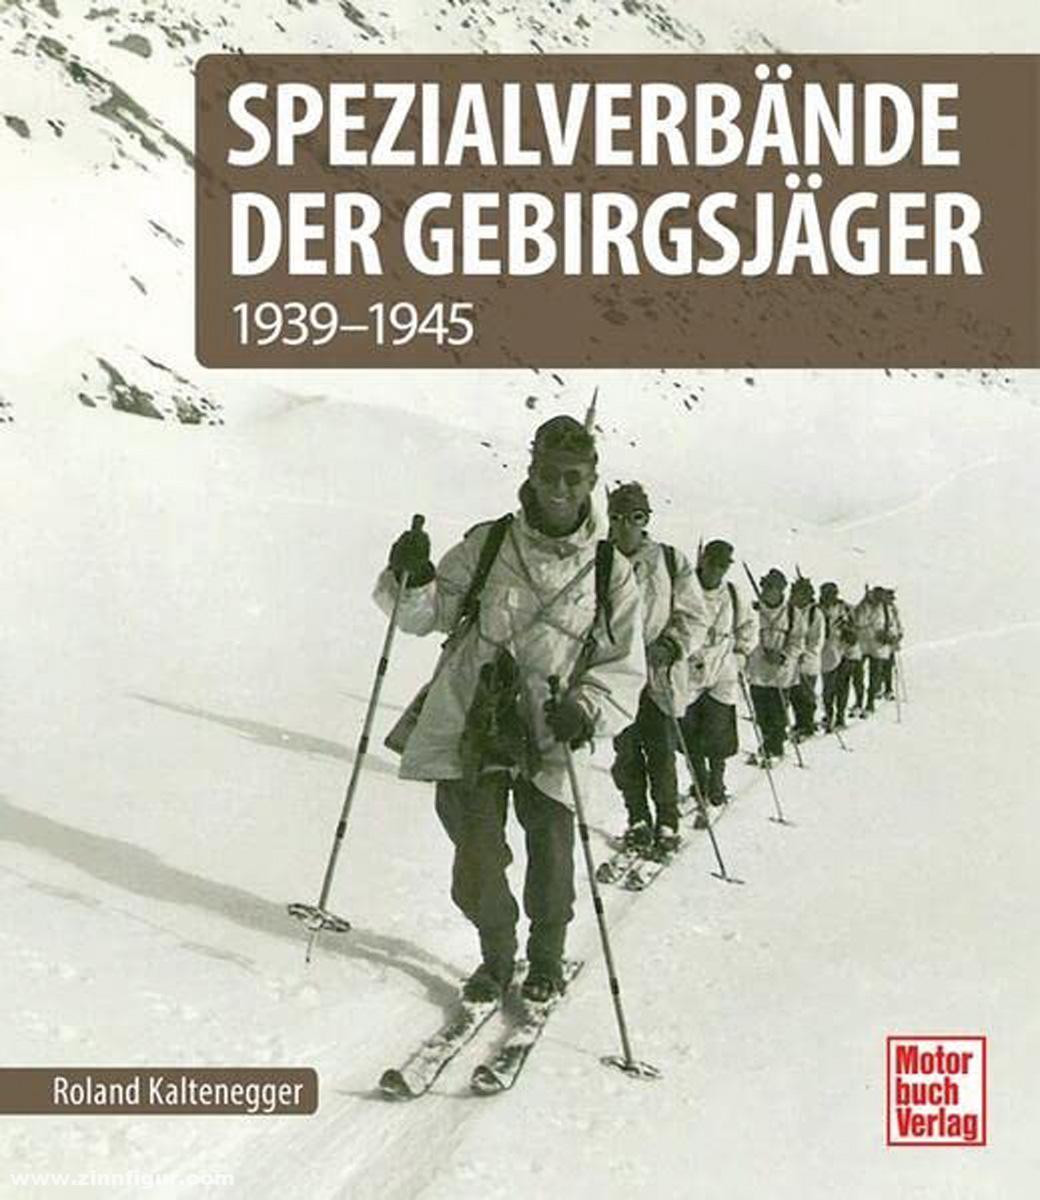 Motorbuch Verlag Kaltenegger, Roland: Spezialverbände der Gebirgsjäger 1939-1945